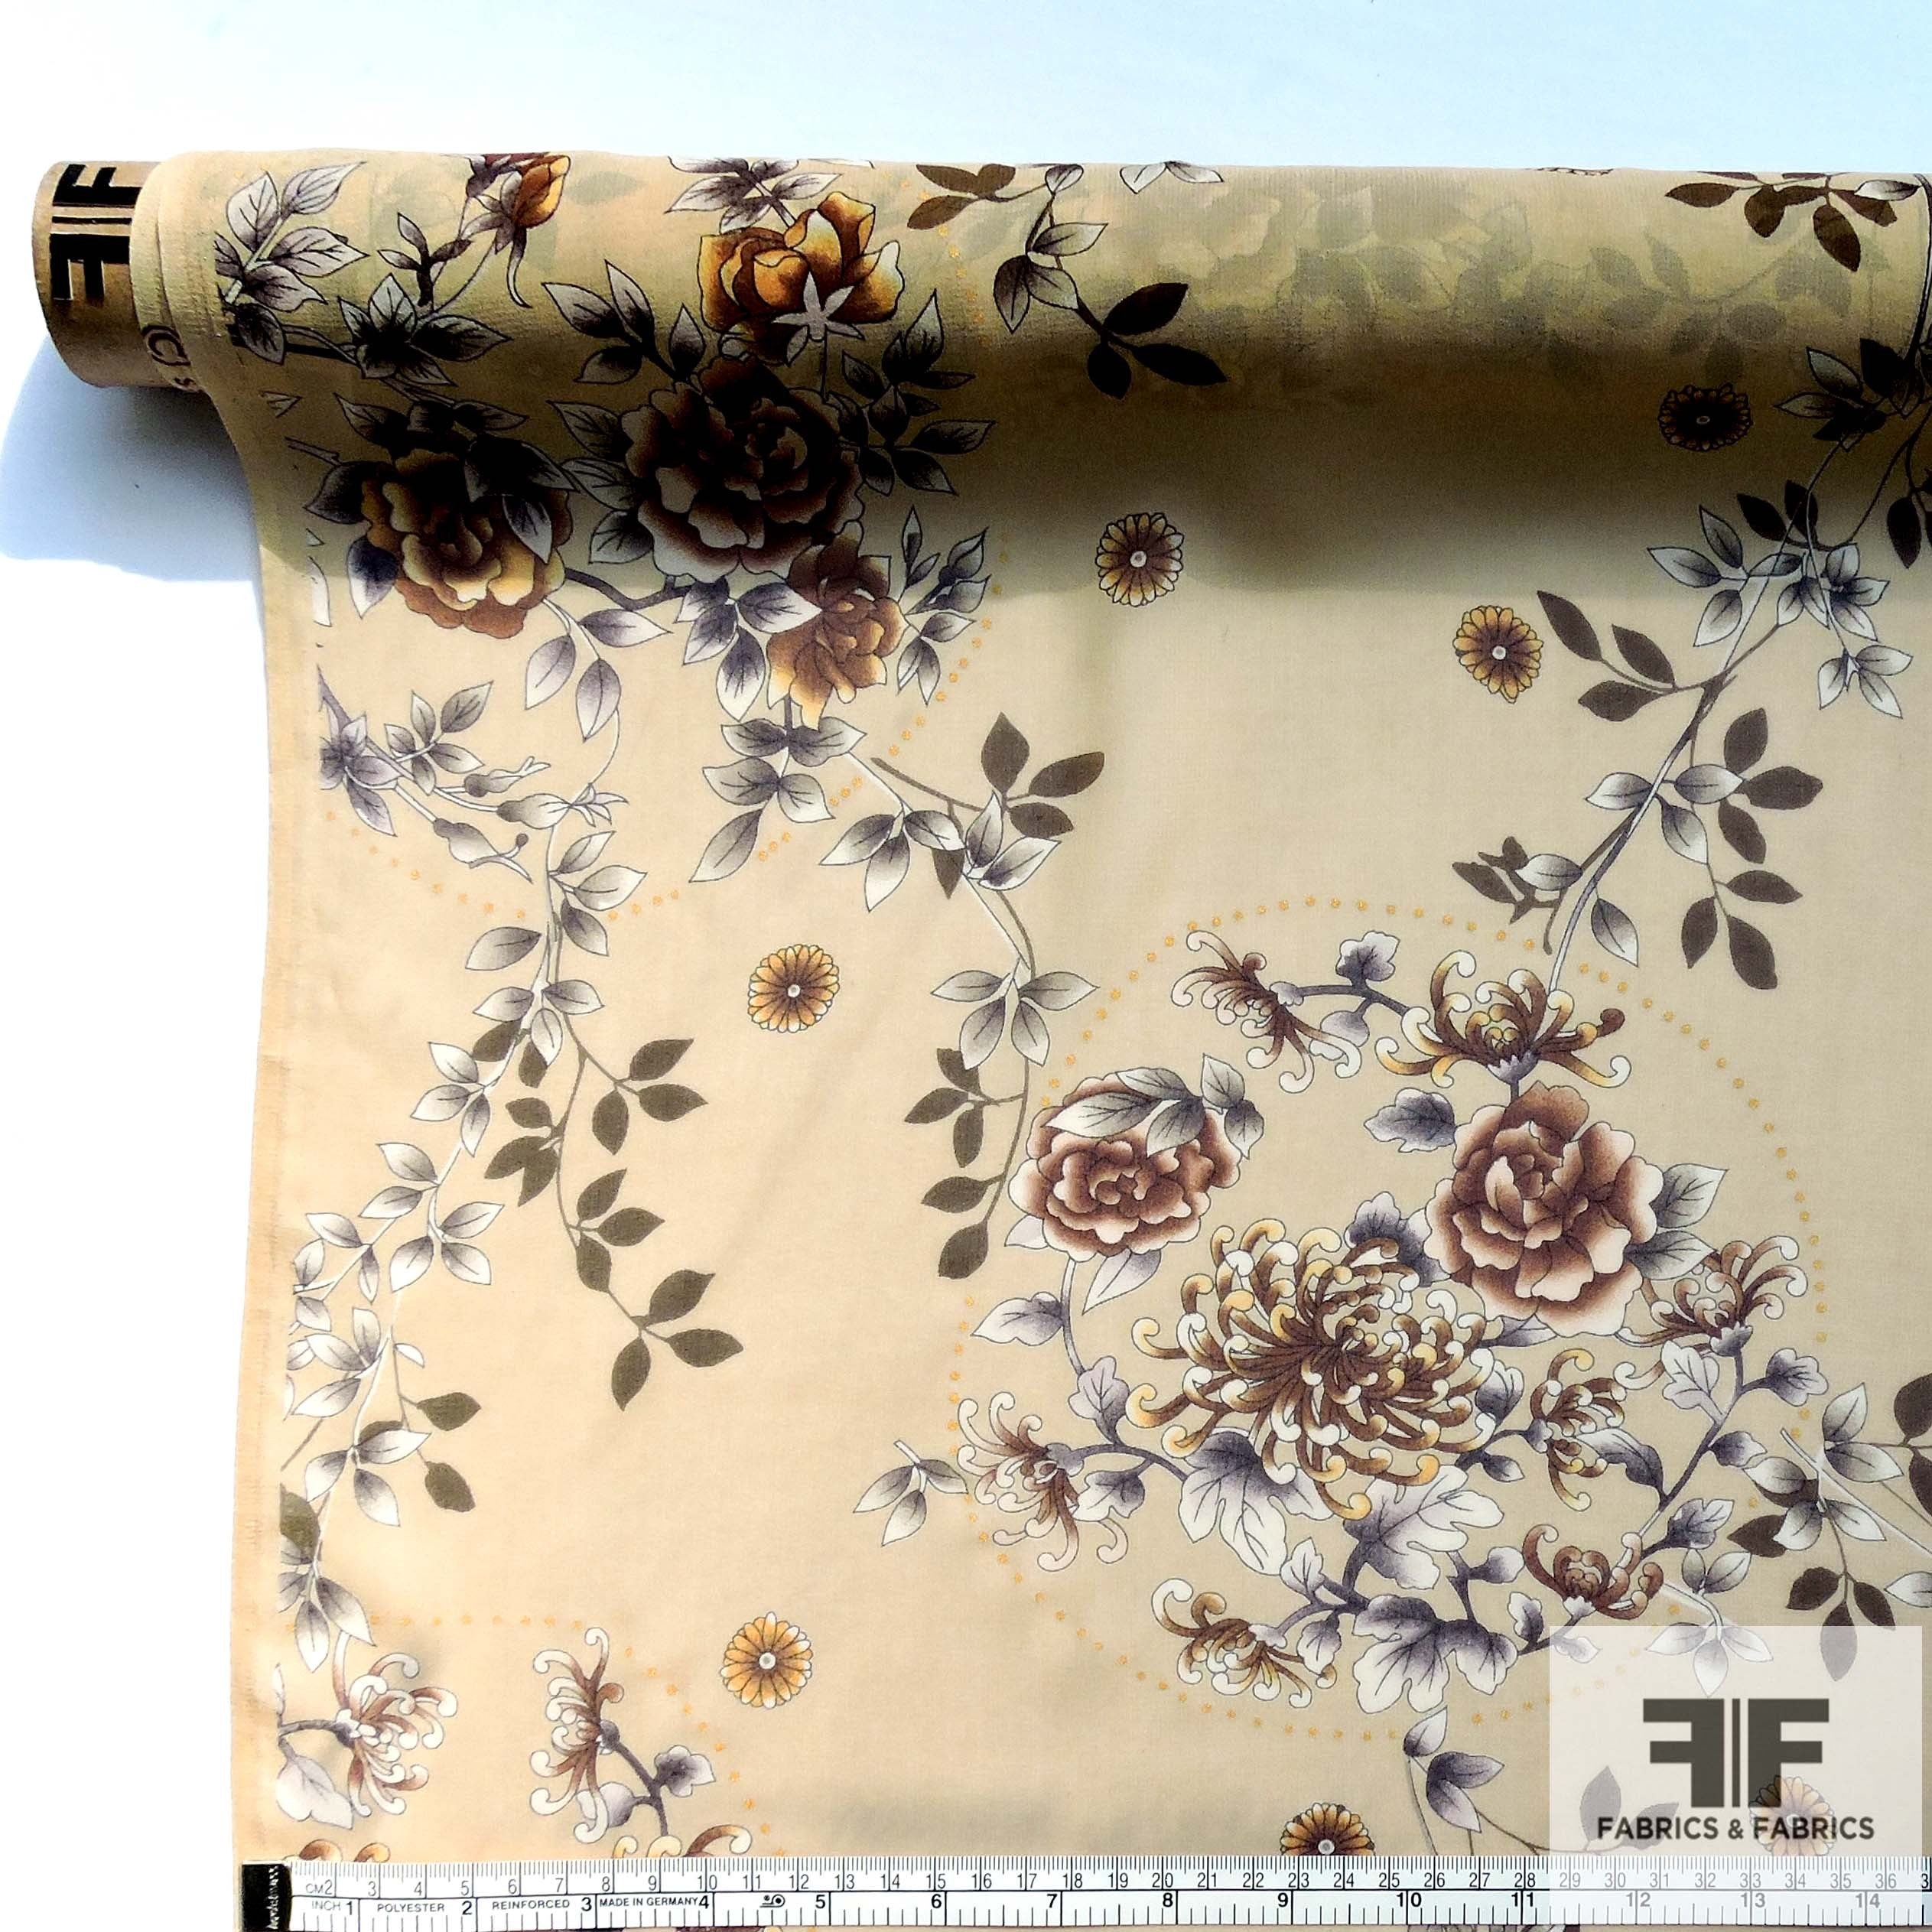 Floral Printed Silk Chiffon - Brown/Tan/Natural